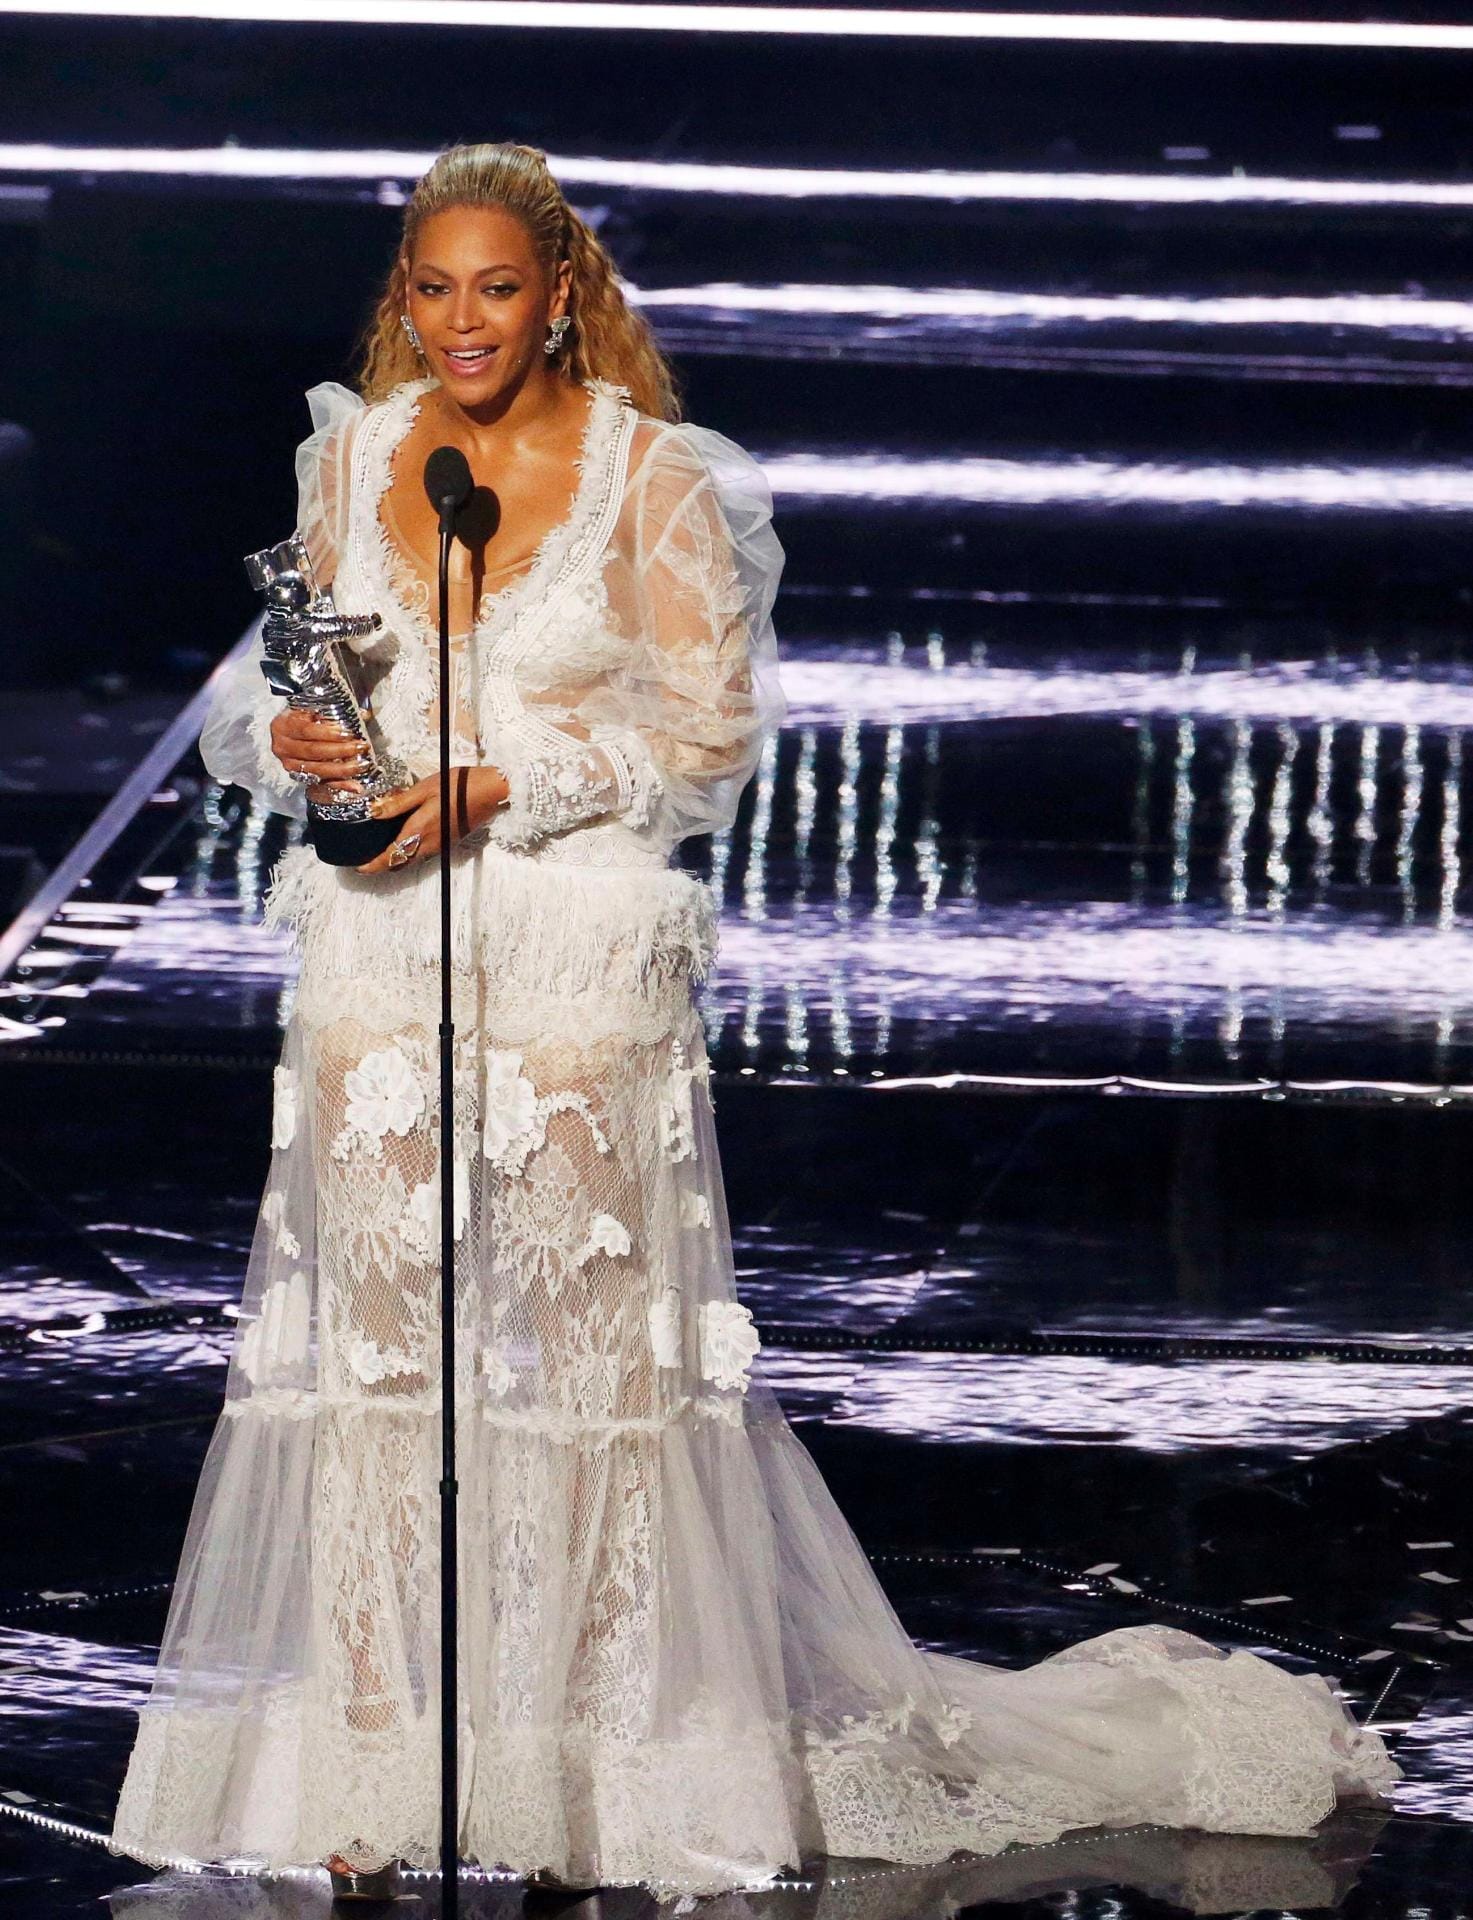 Als sie den Preis für das Video des Jahres entgegennahm, hatte Beyoncé schon das Outfit gewechselt. Offenbar musste Omas gute Gardine dran glauben.